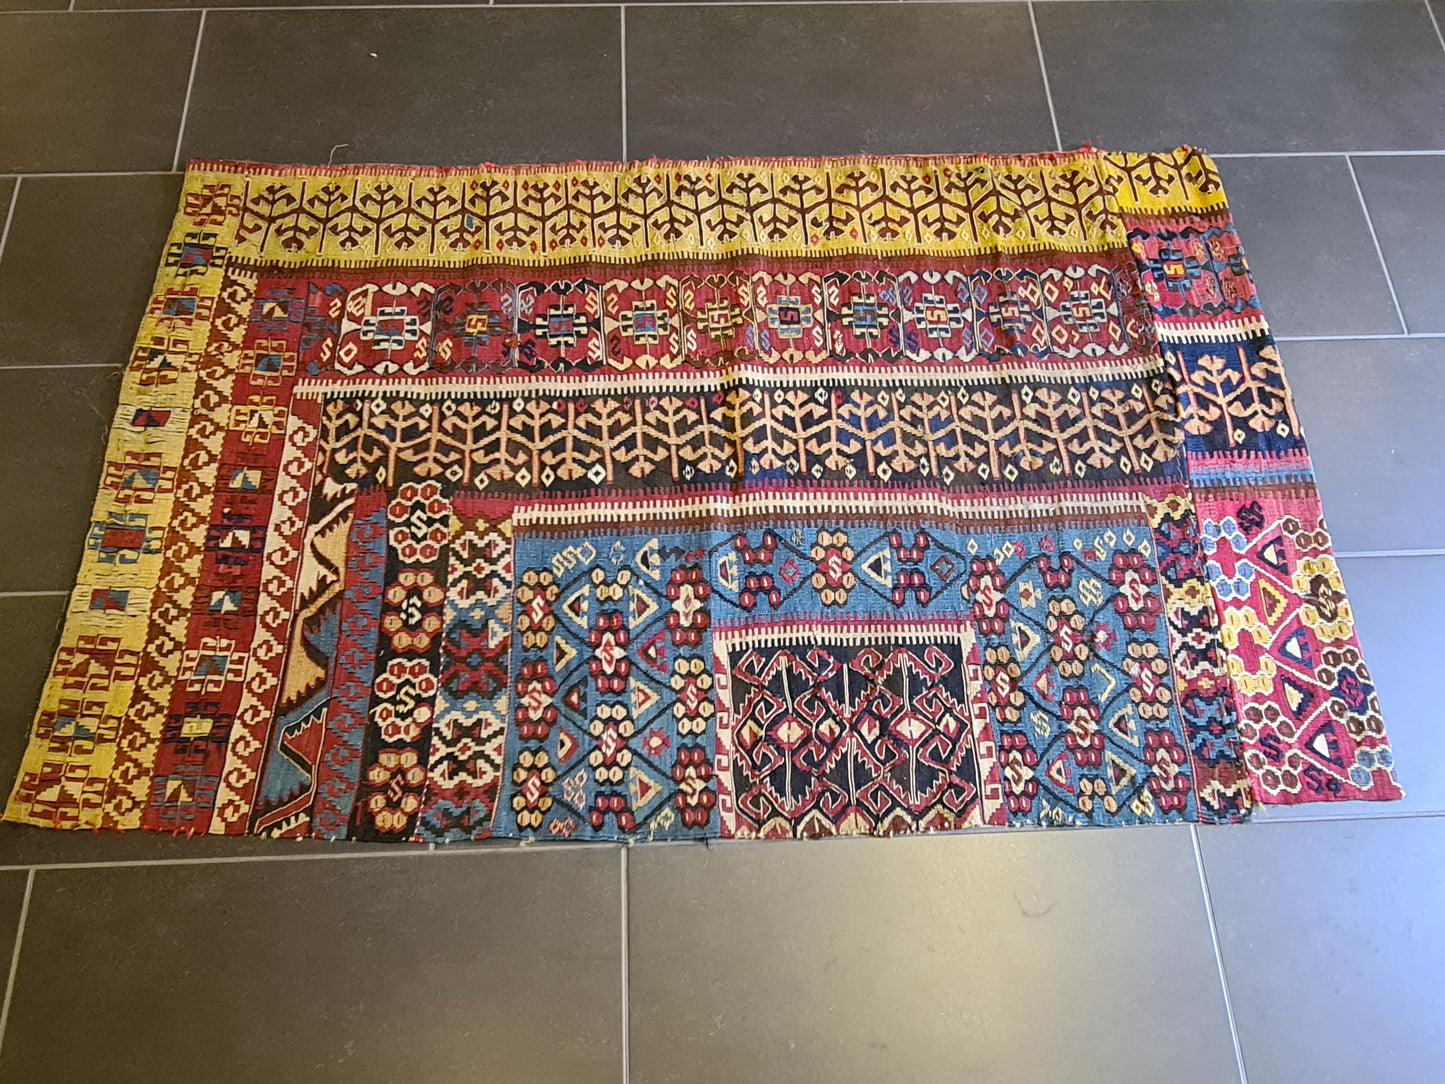 Kelim Teppich Anatolien Handgeknüpftes Sammlerstück in Naturfarben 145x90cm